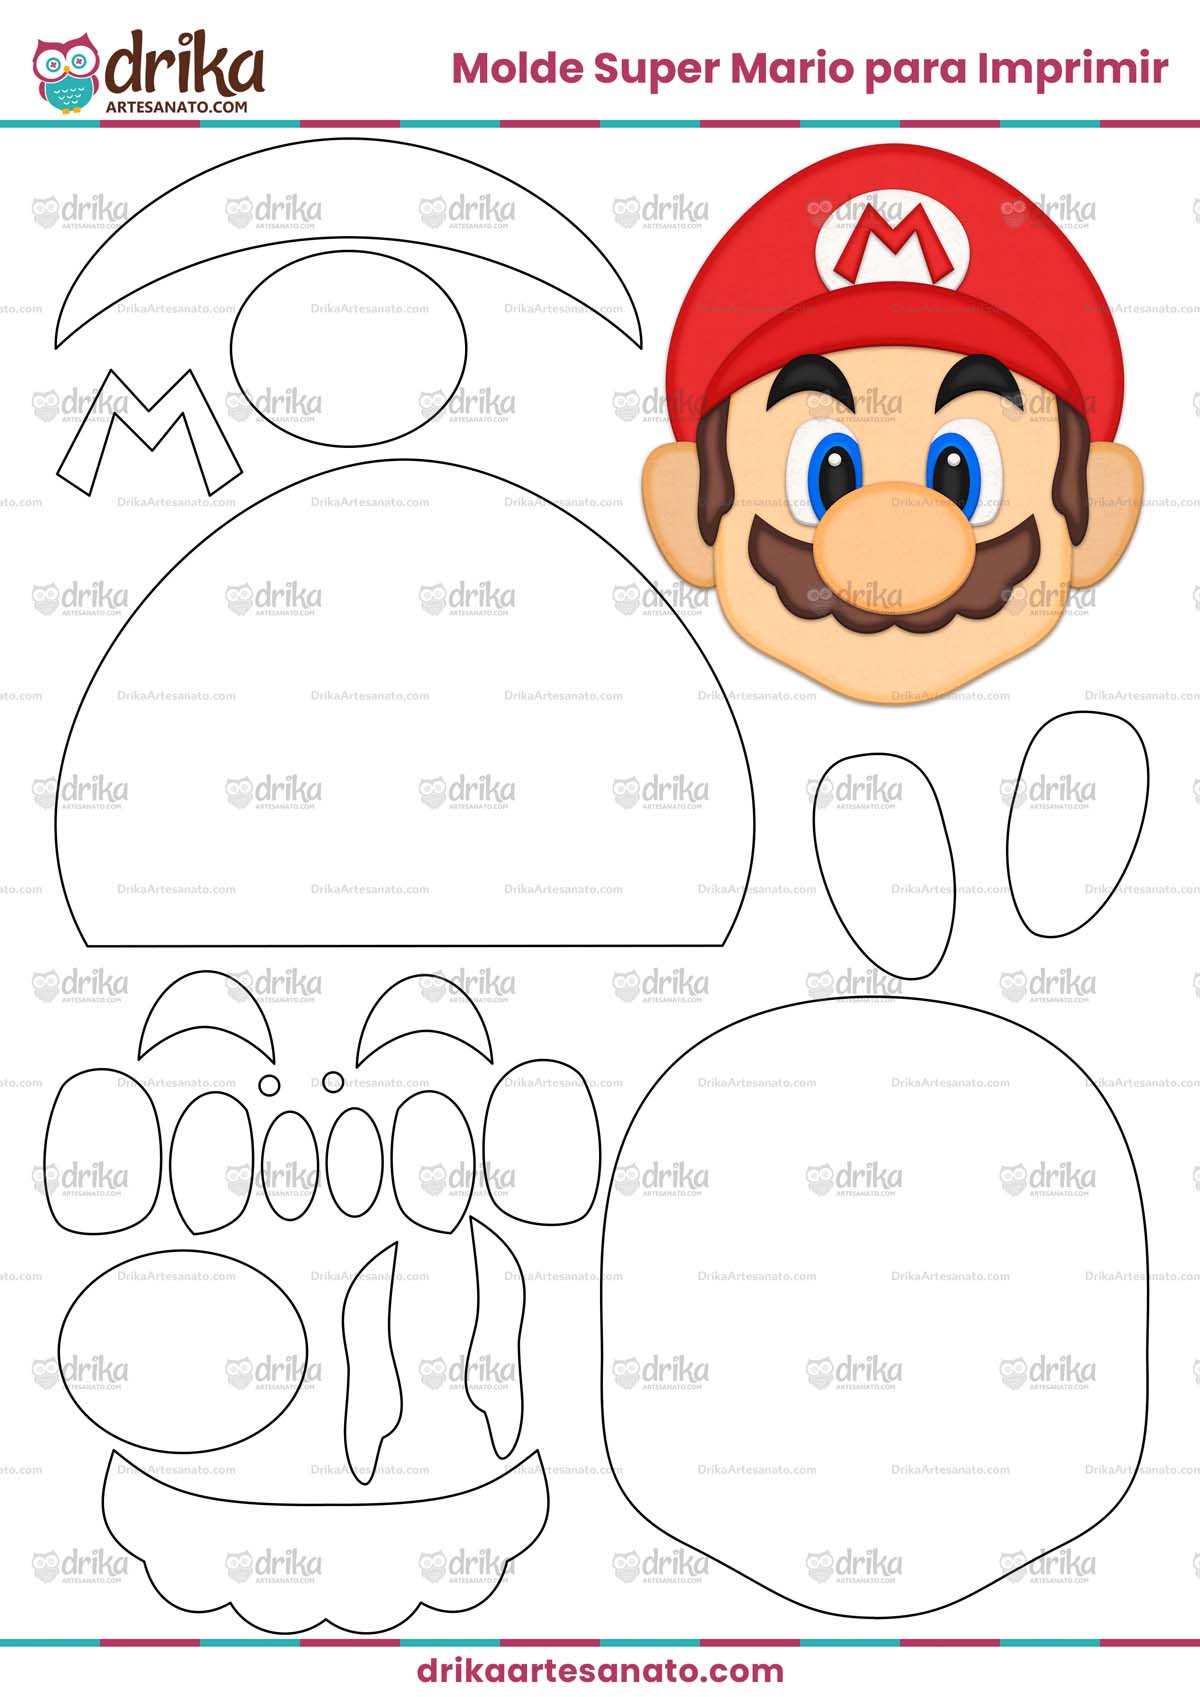 Molde do Super Mario para Imprimir Grátis em PDF